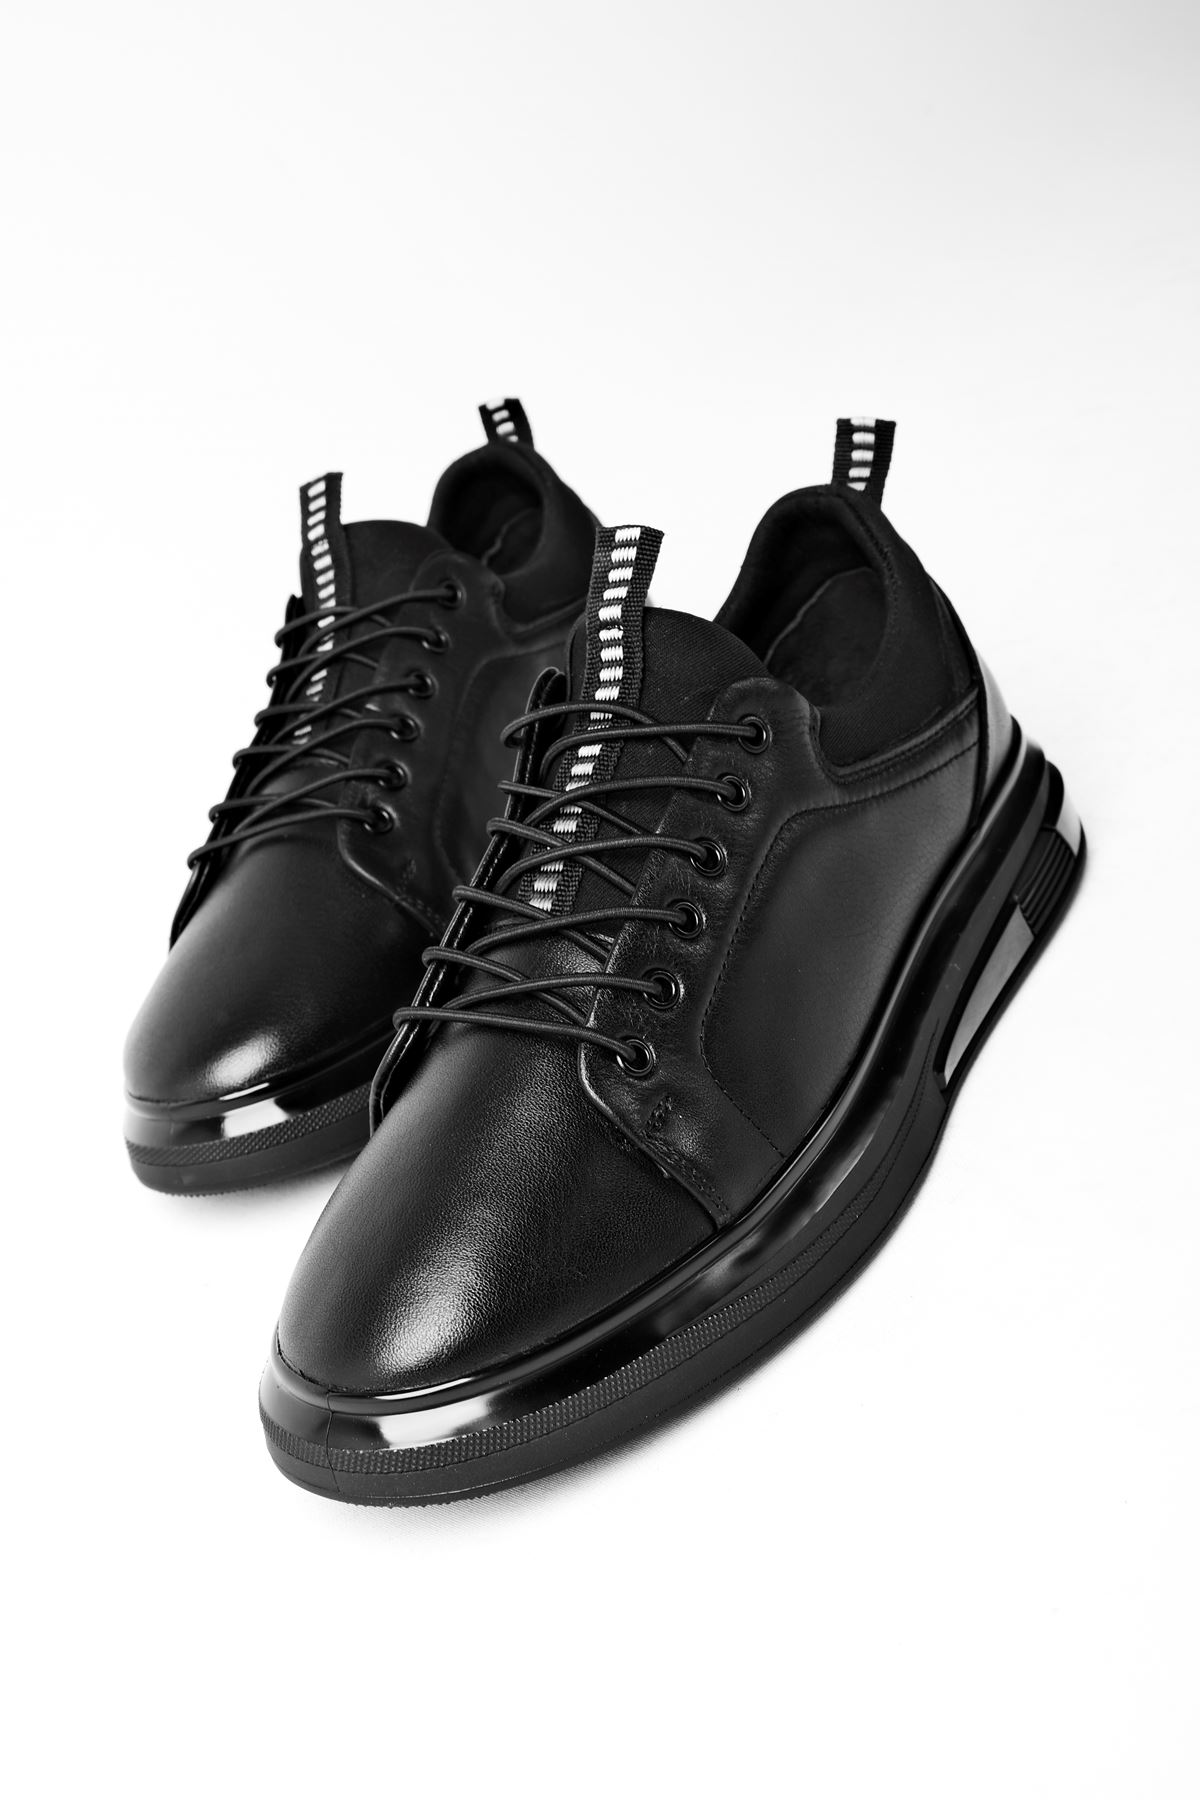 Shay Hakiki Deri Erkek Bağcıklı Günlük Ayakkabı-siyah